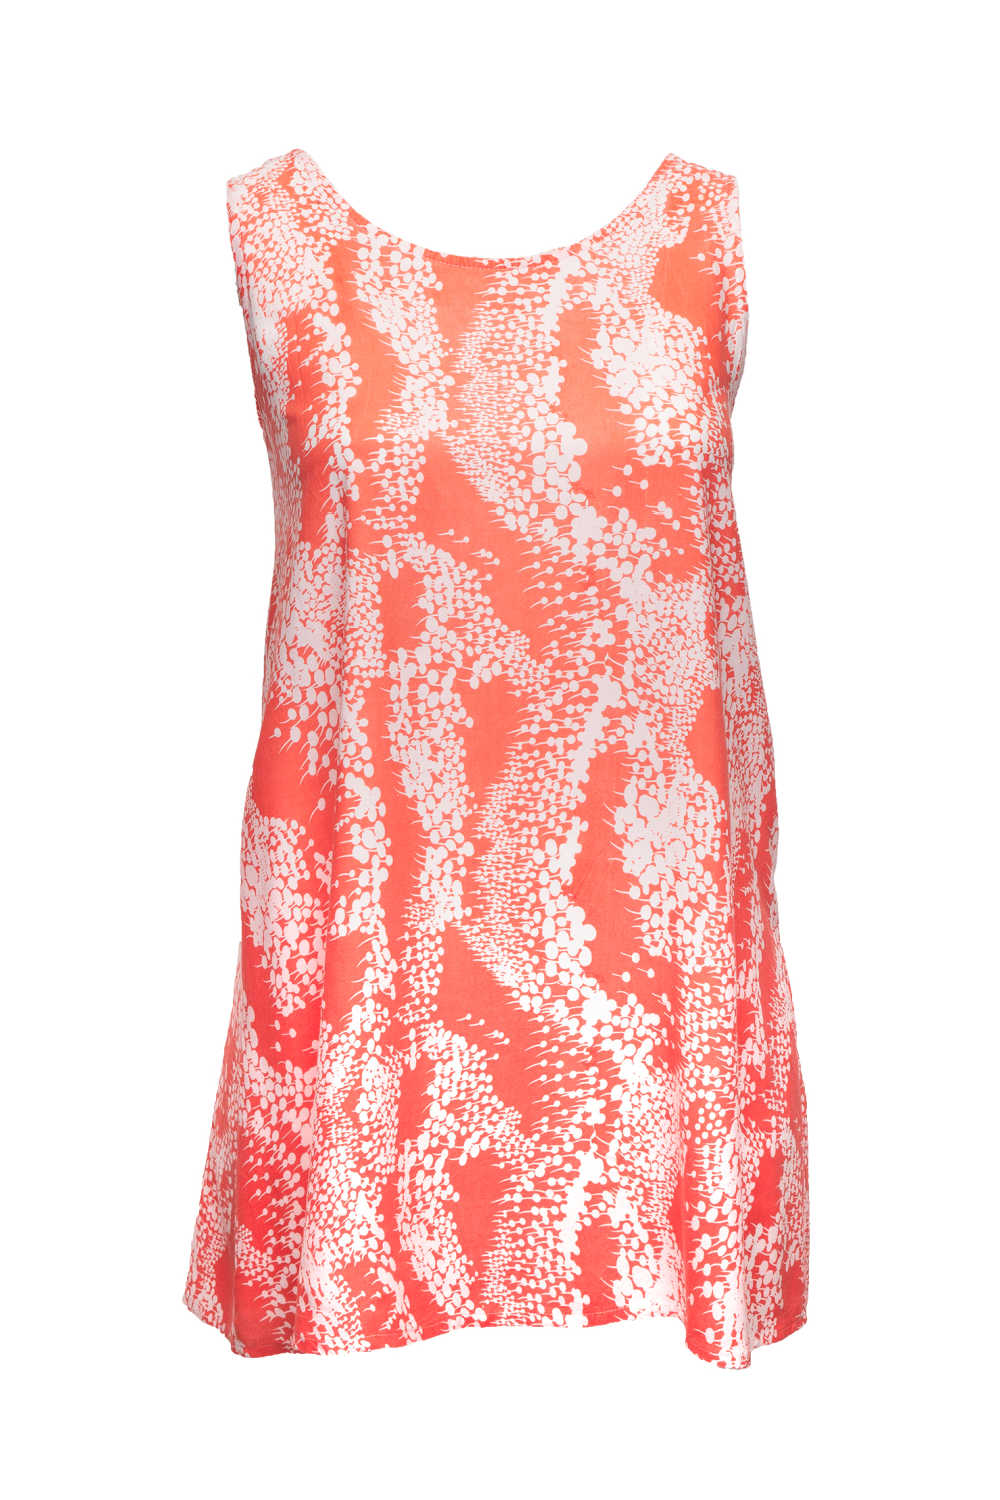 short-summer-dress-orange-white-floral-design